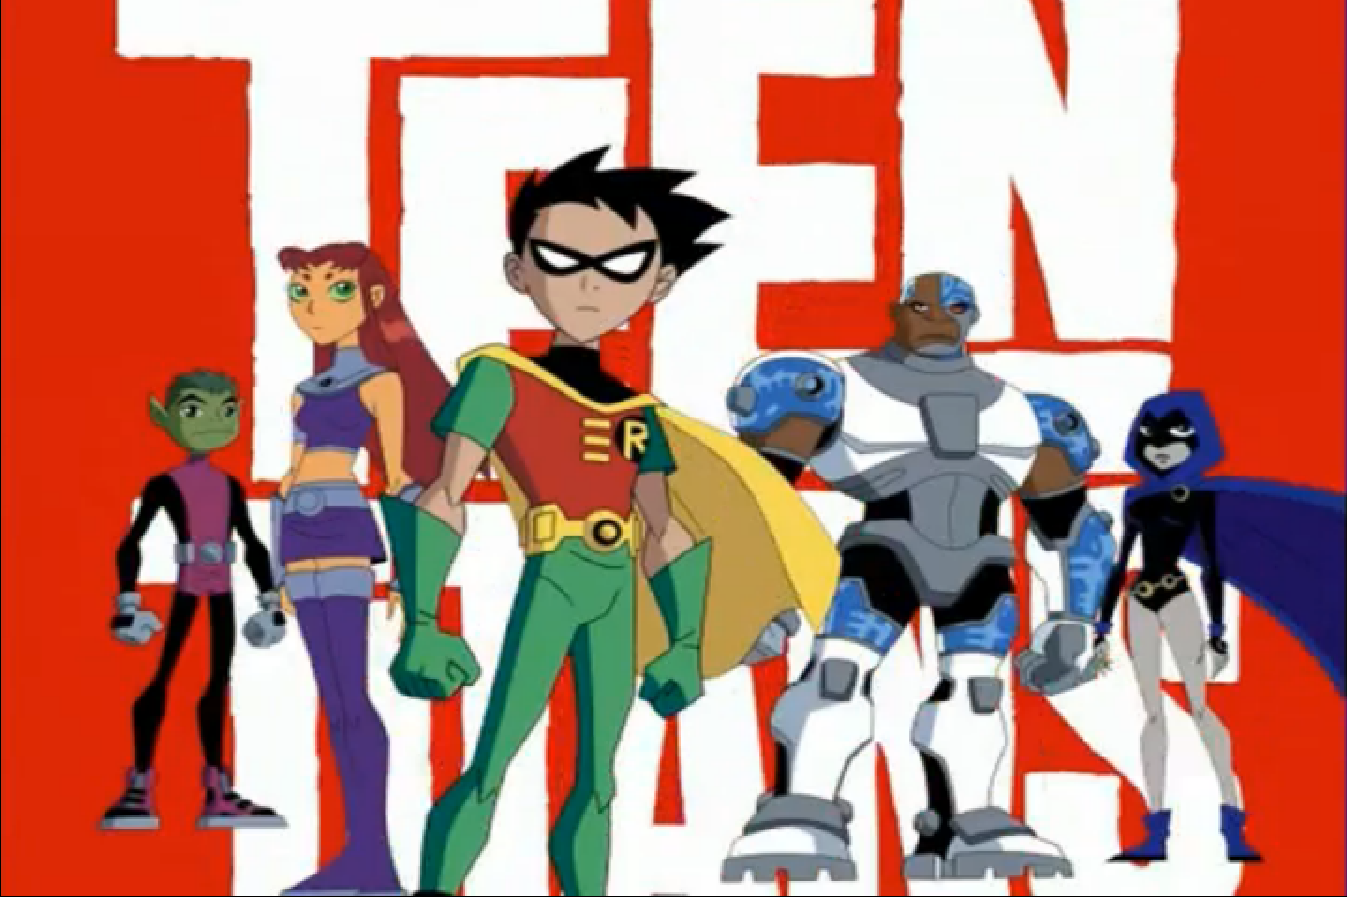 Teen Titans Go Wallpaper